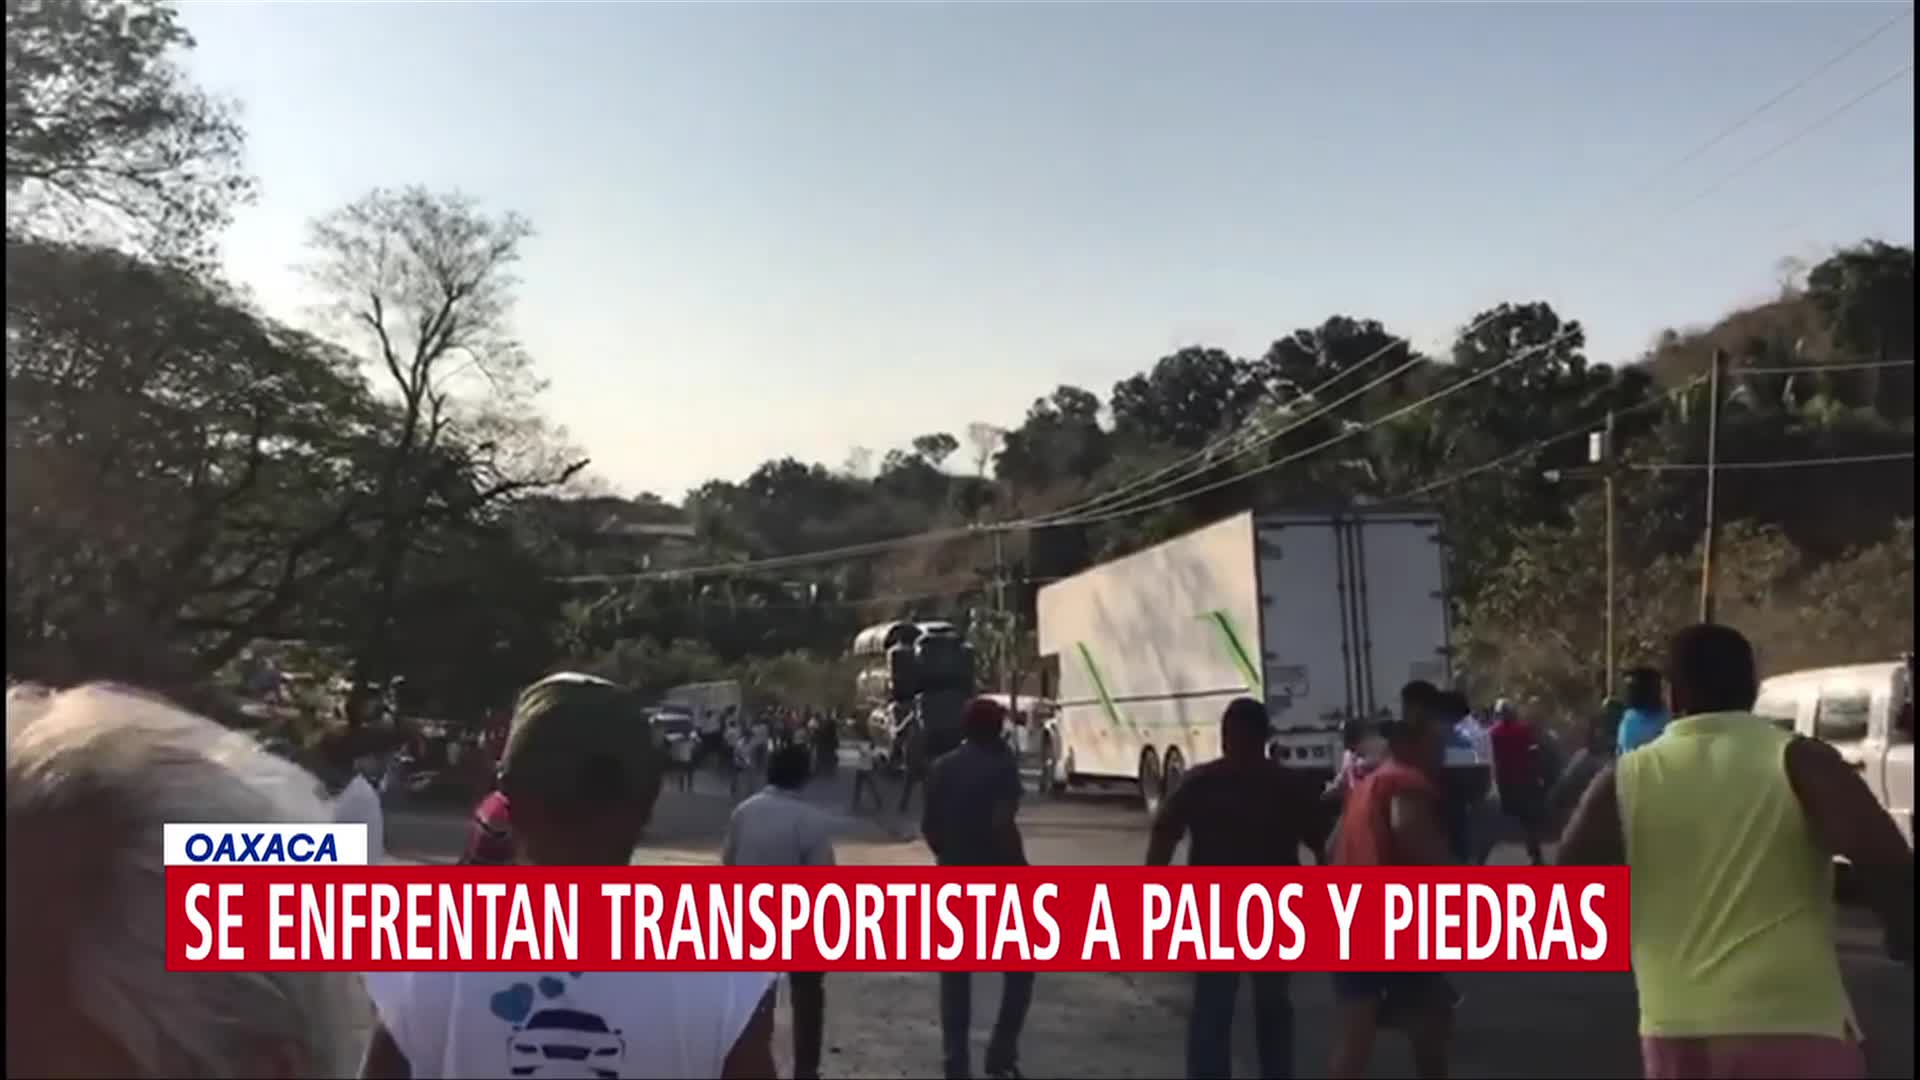 FOTO: Se enfrentan transportistas a palos y piedras en Oaxaca, 31 Marzo 2019